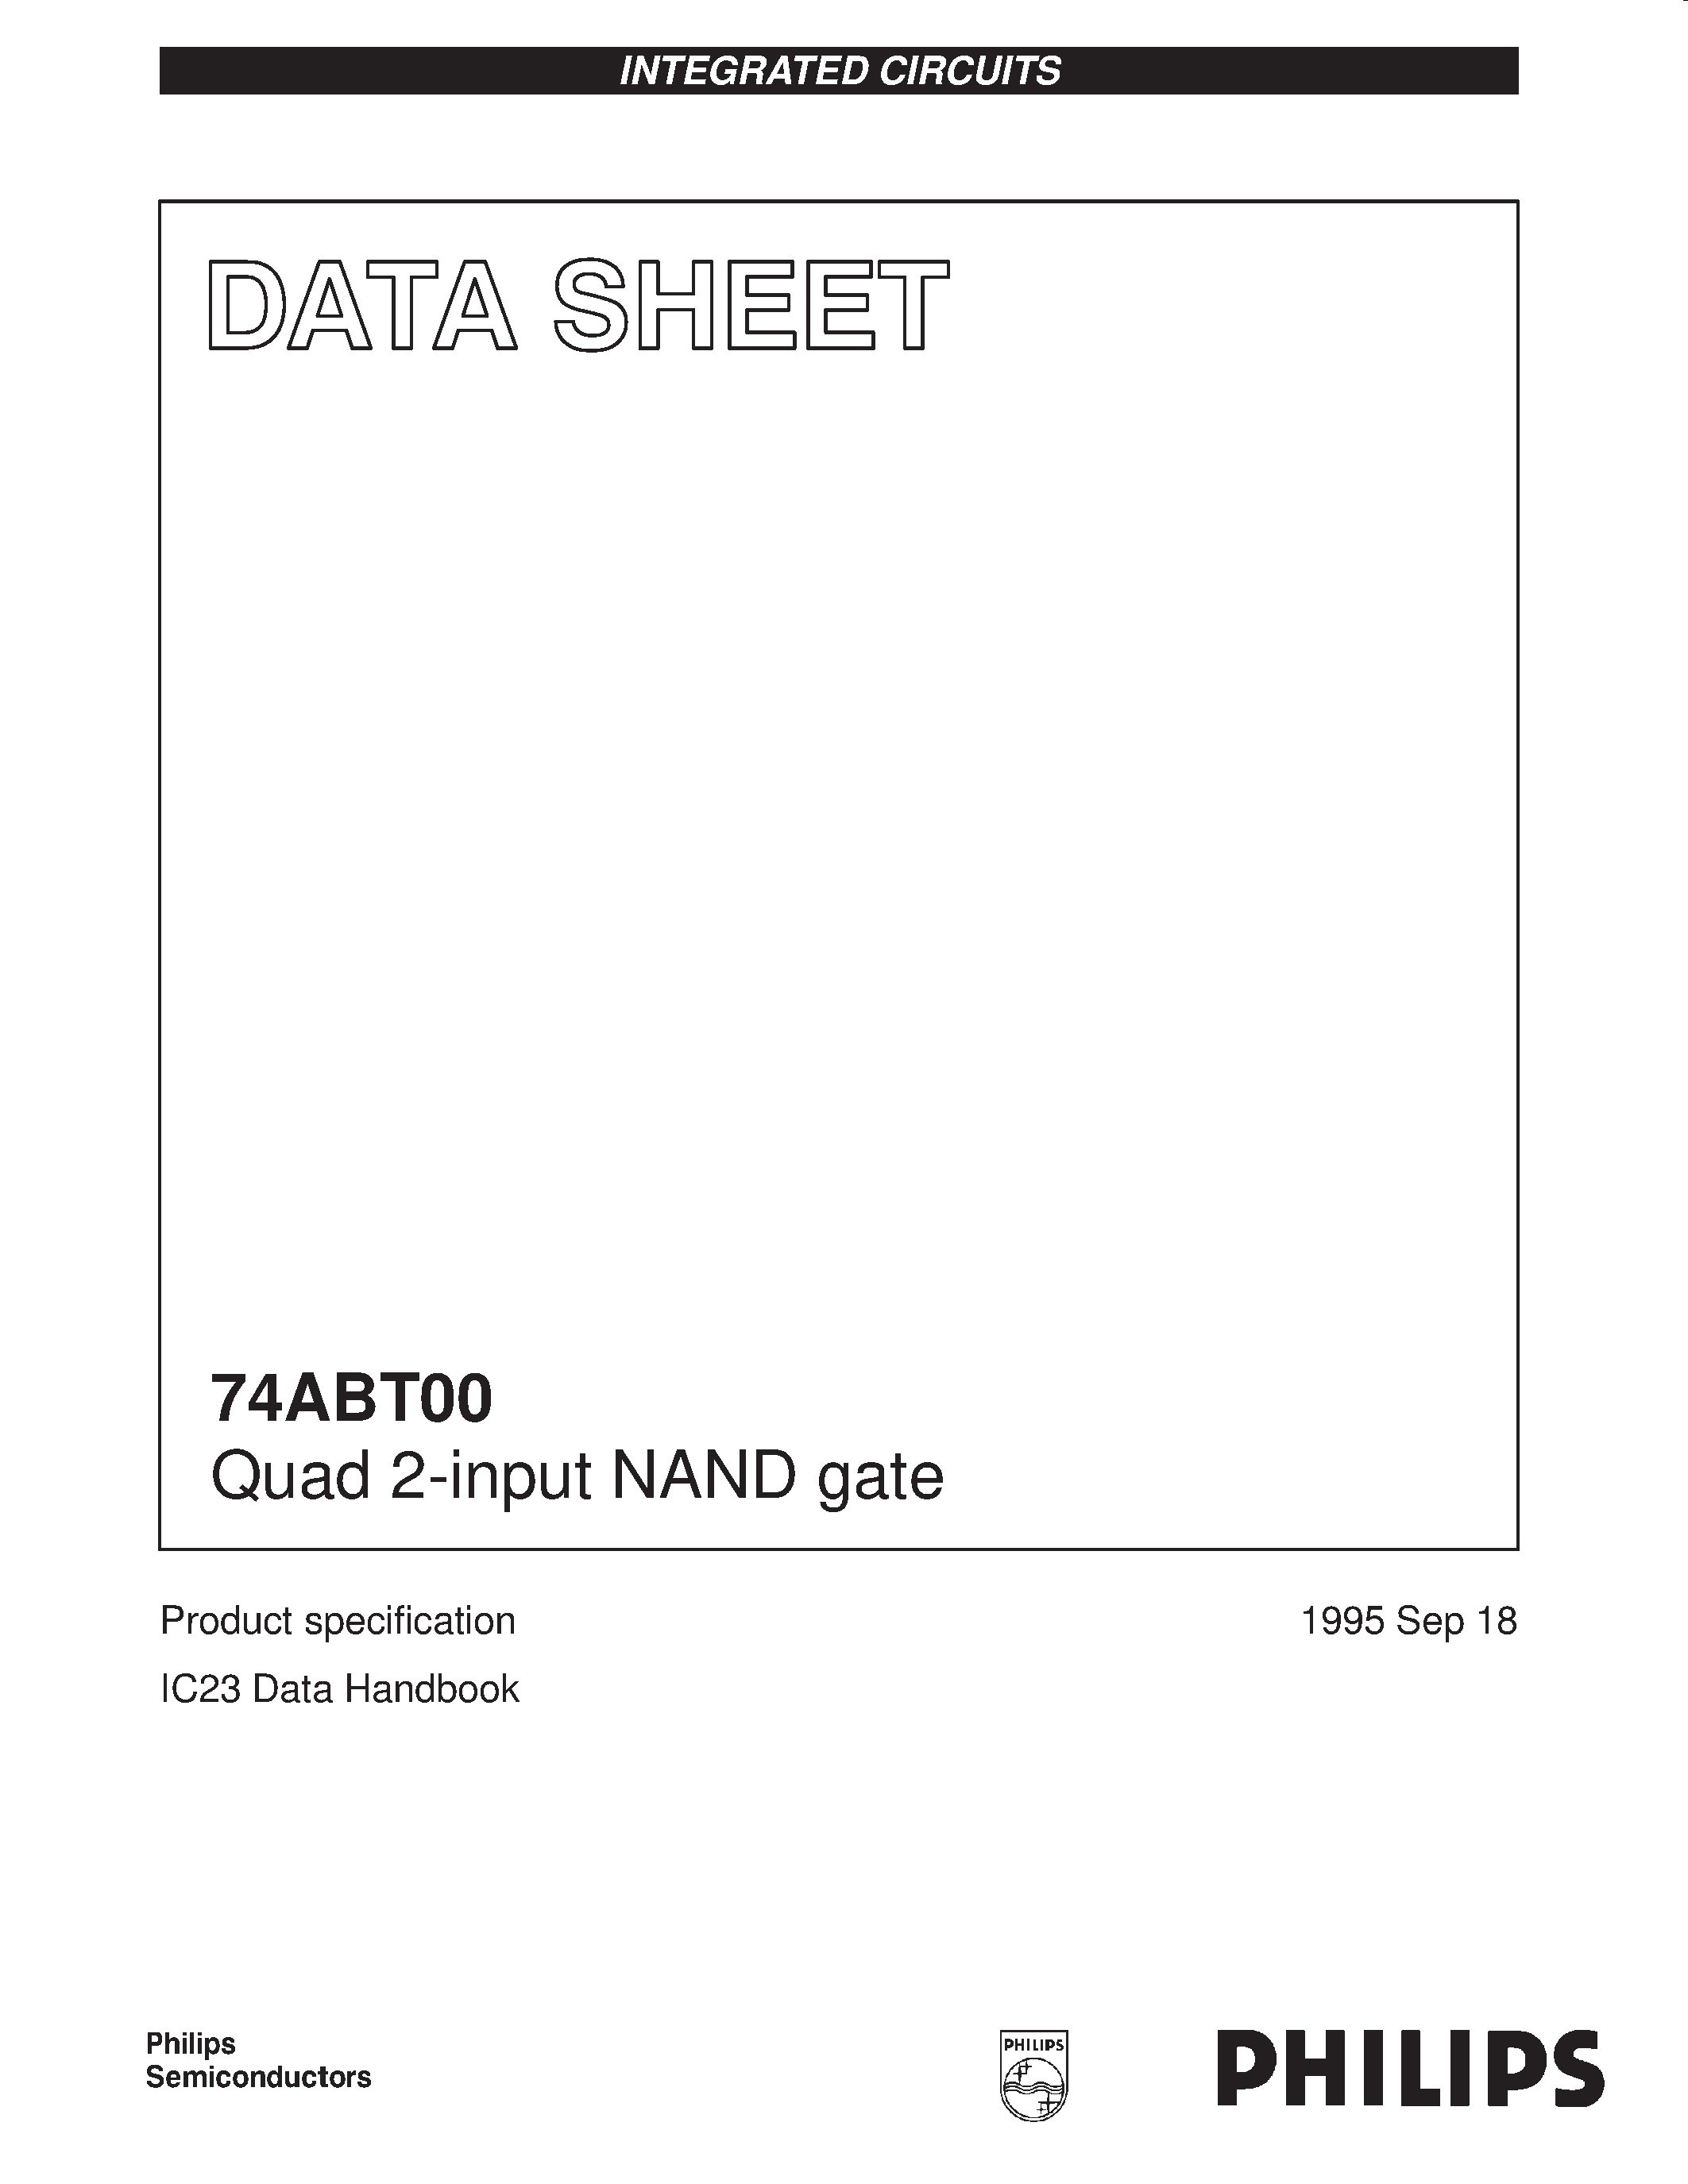 Даташит 74ABT00PW - Quad 2-input NAND gate страница 1